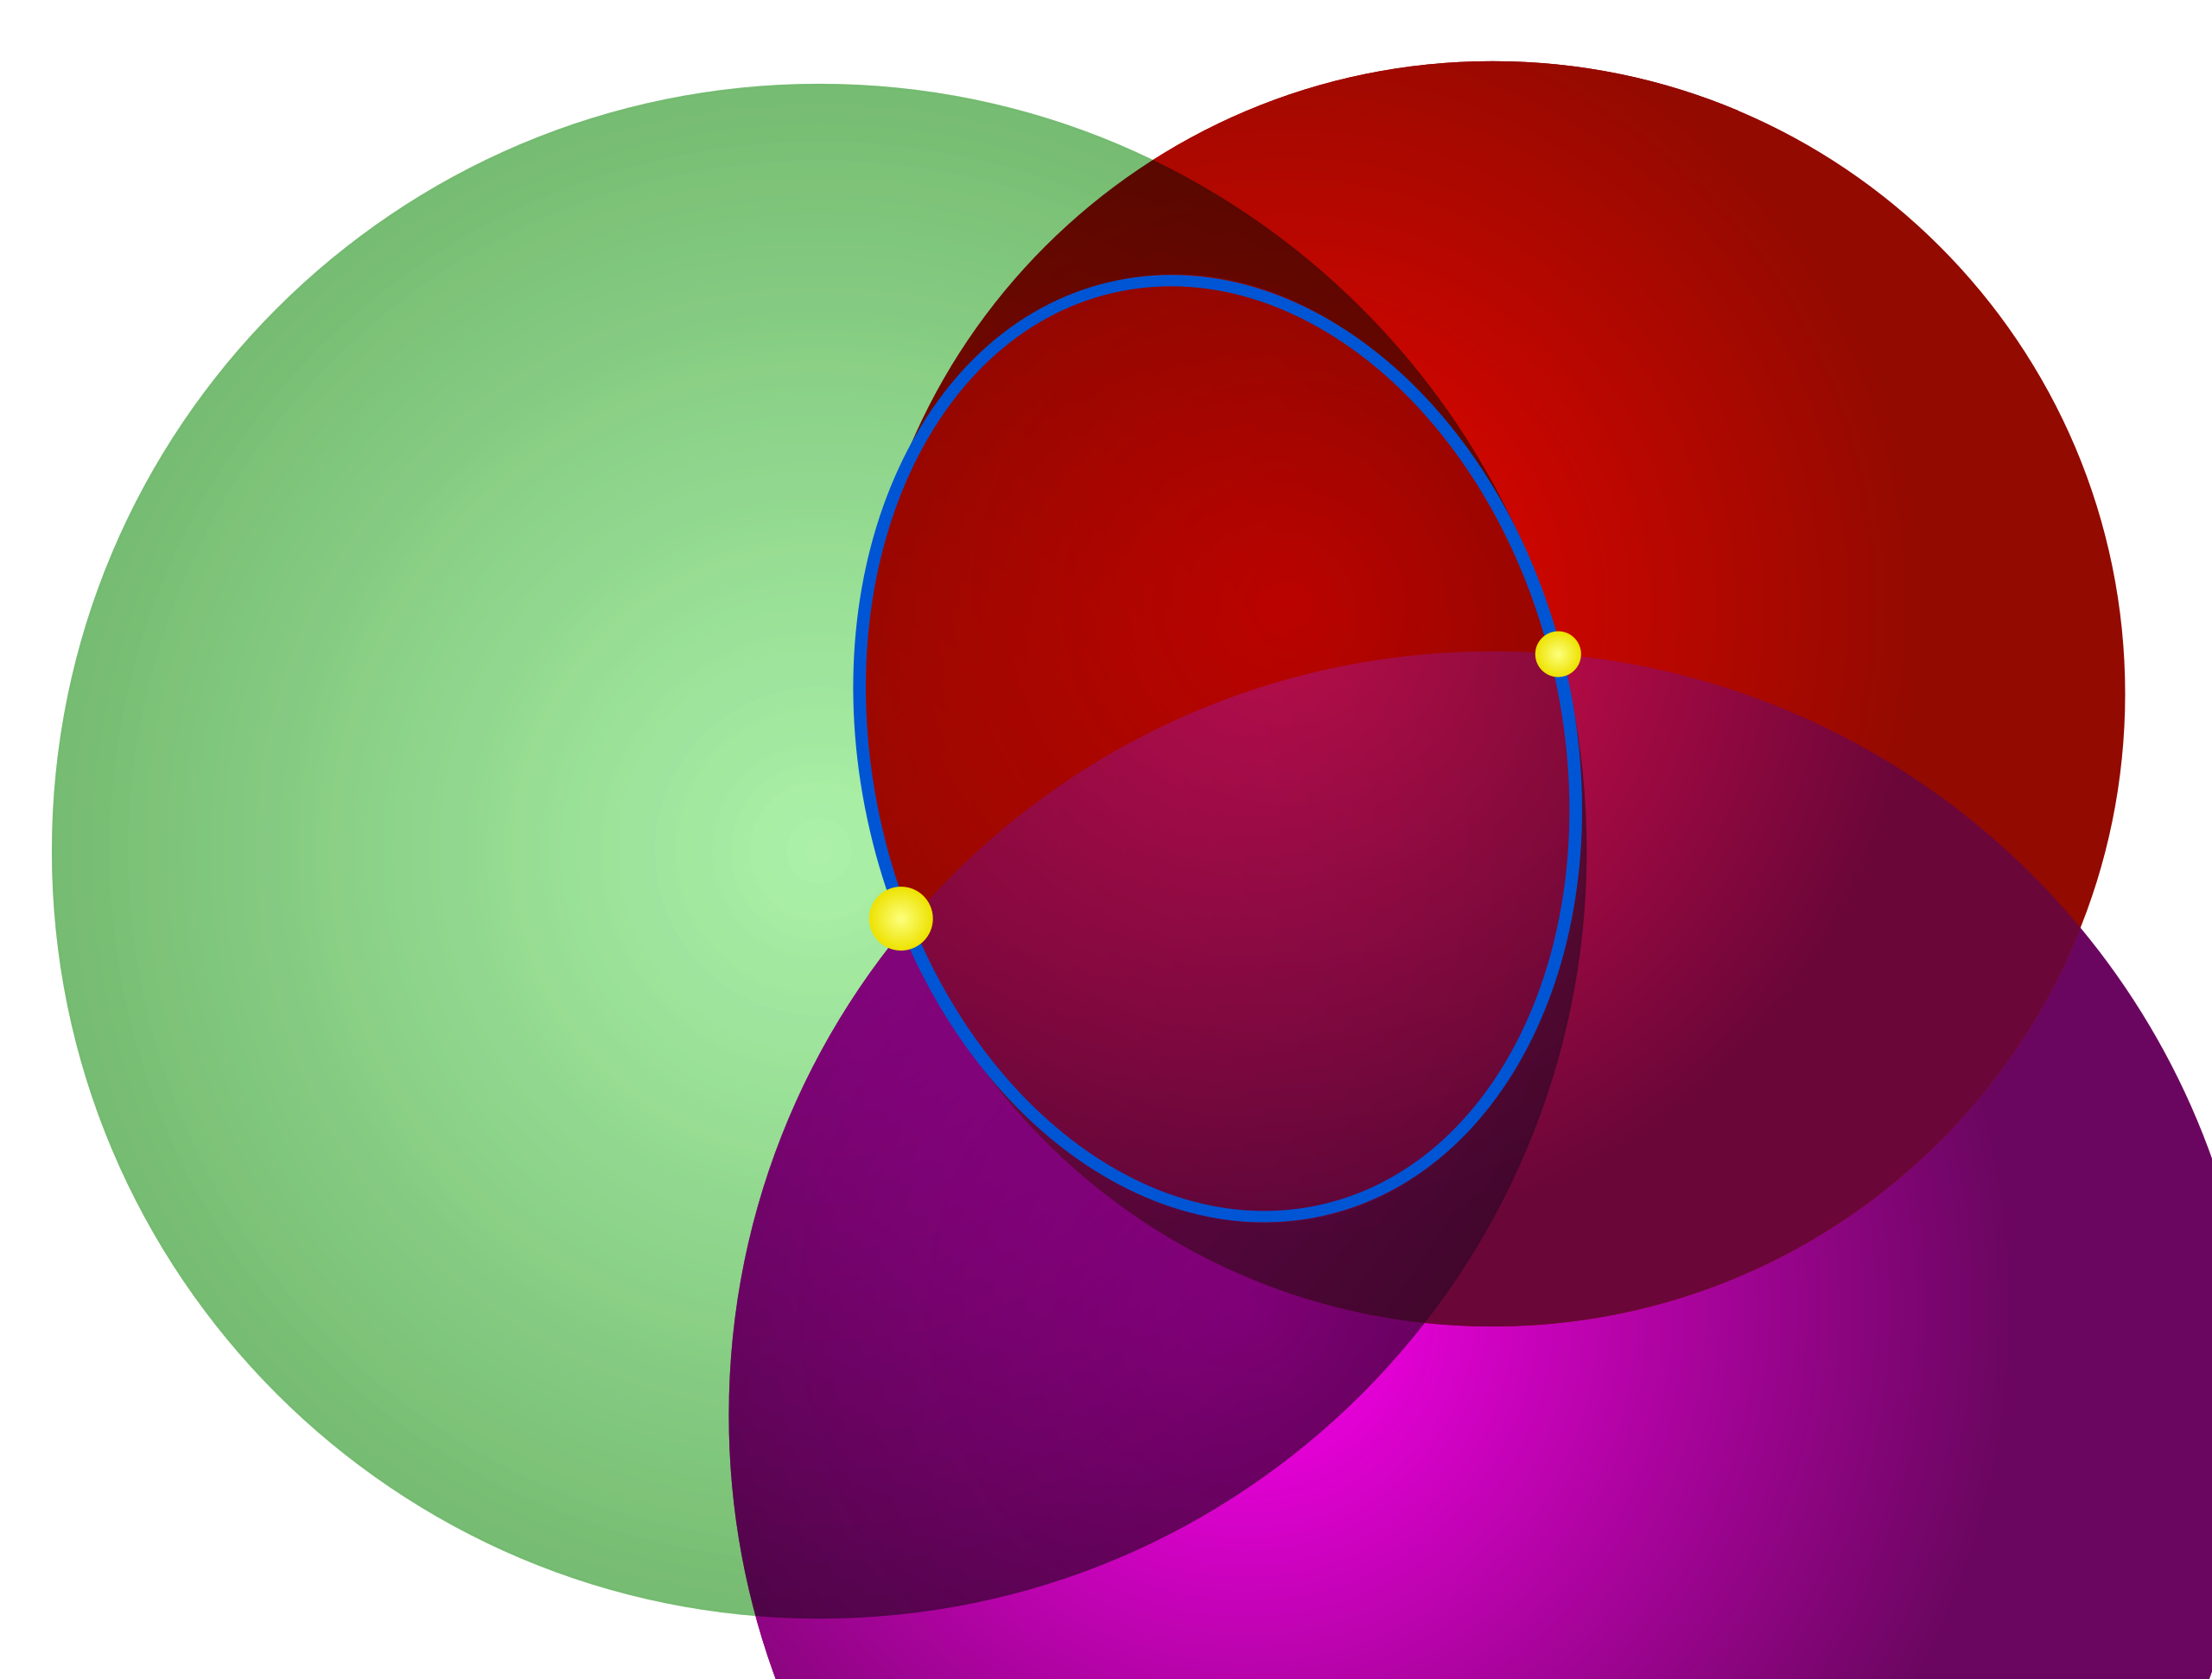 Пересечение 3 кругов. Пересечение трех сфер. Пересекающиеся круги. Три пересекающиеся сферы. Три пересекающихся круга.